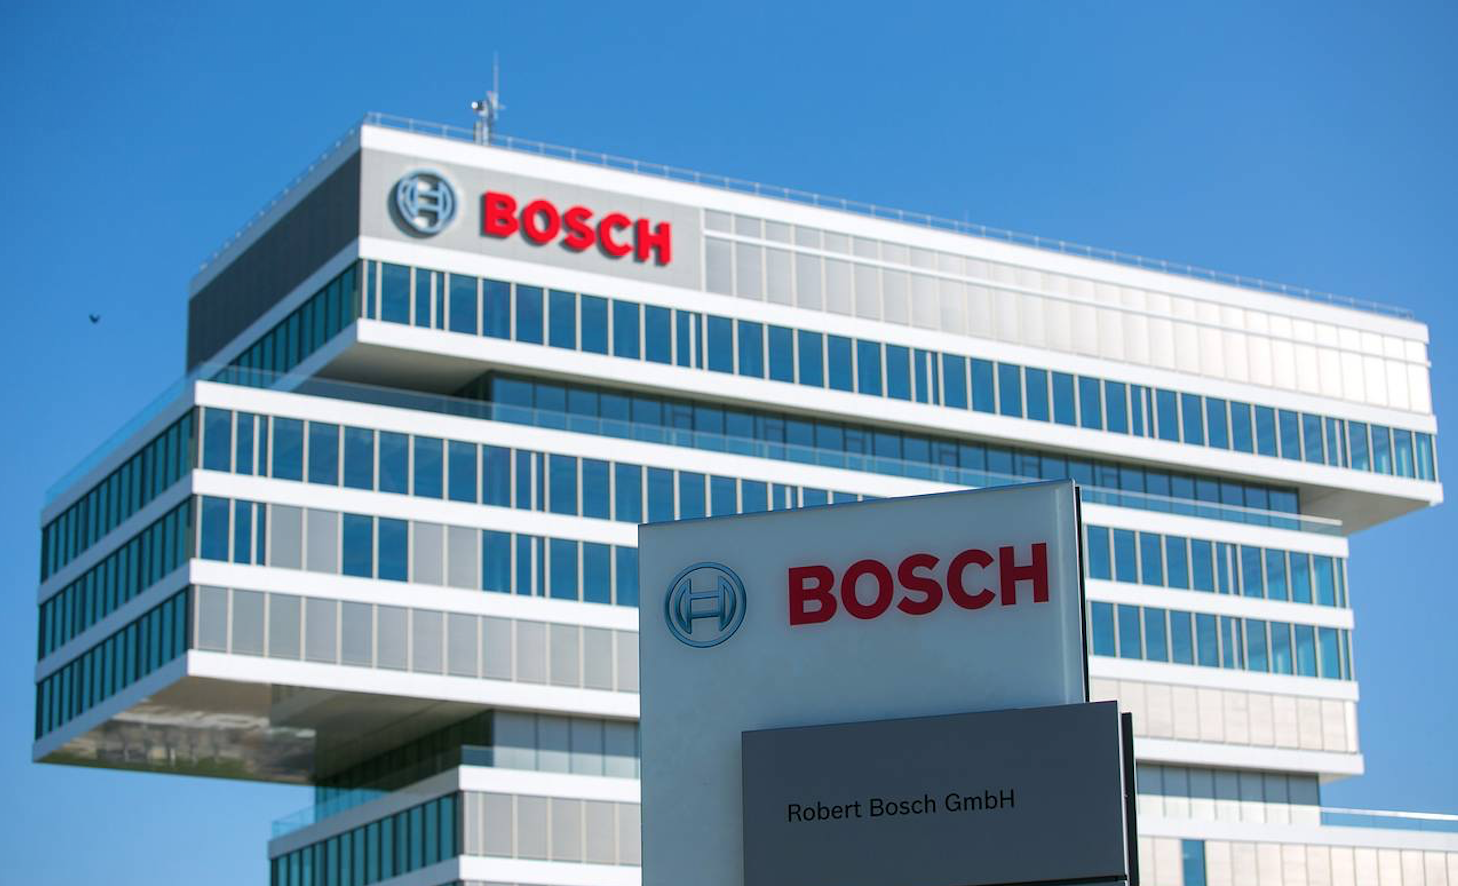 EU acogerá una inversión de 1,500 mdd de Bosch en semiconductores